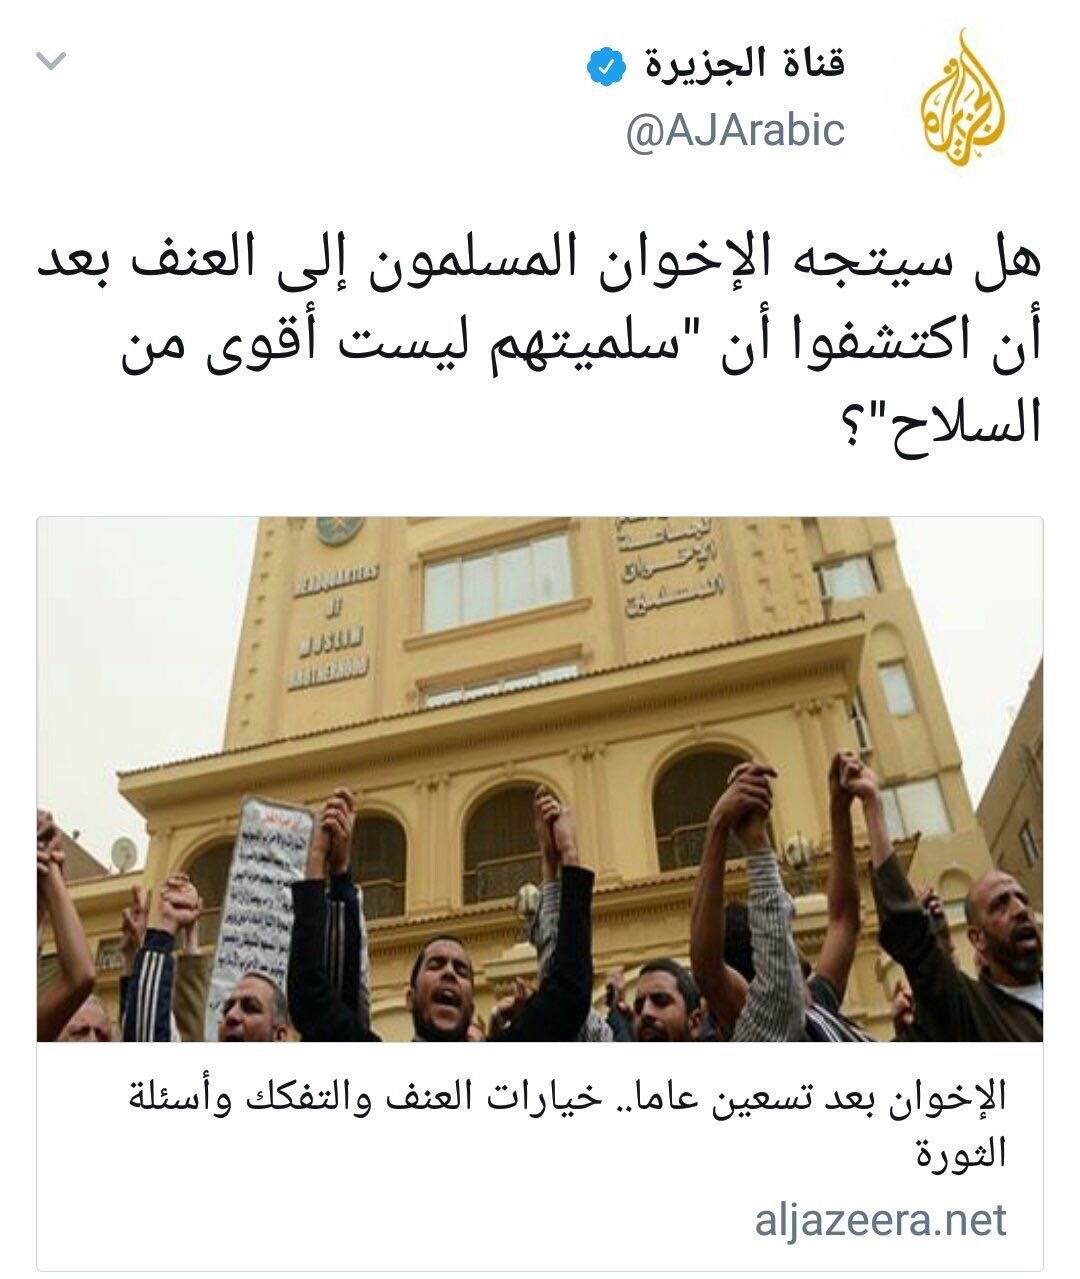 قناة الجزيرة